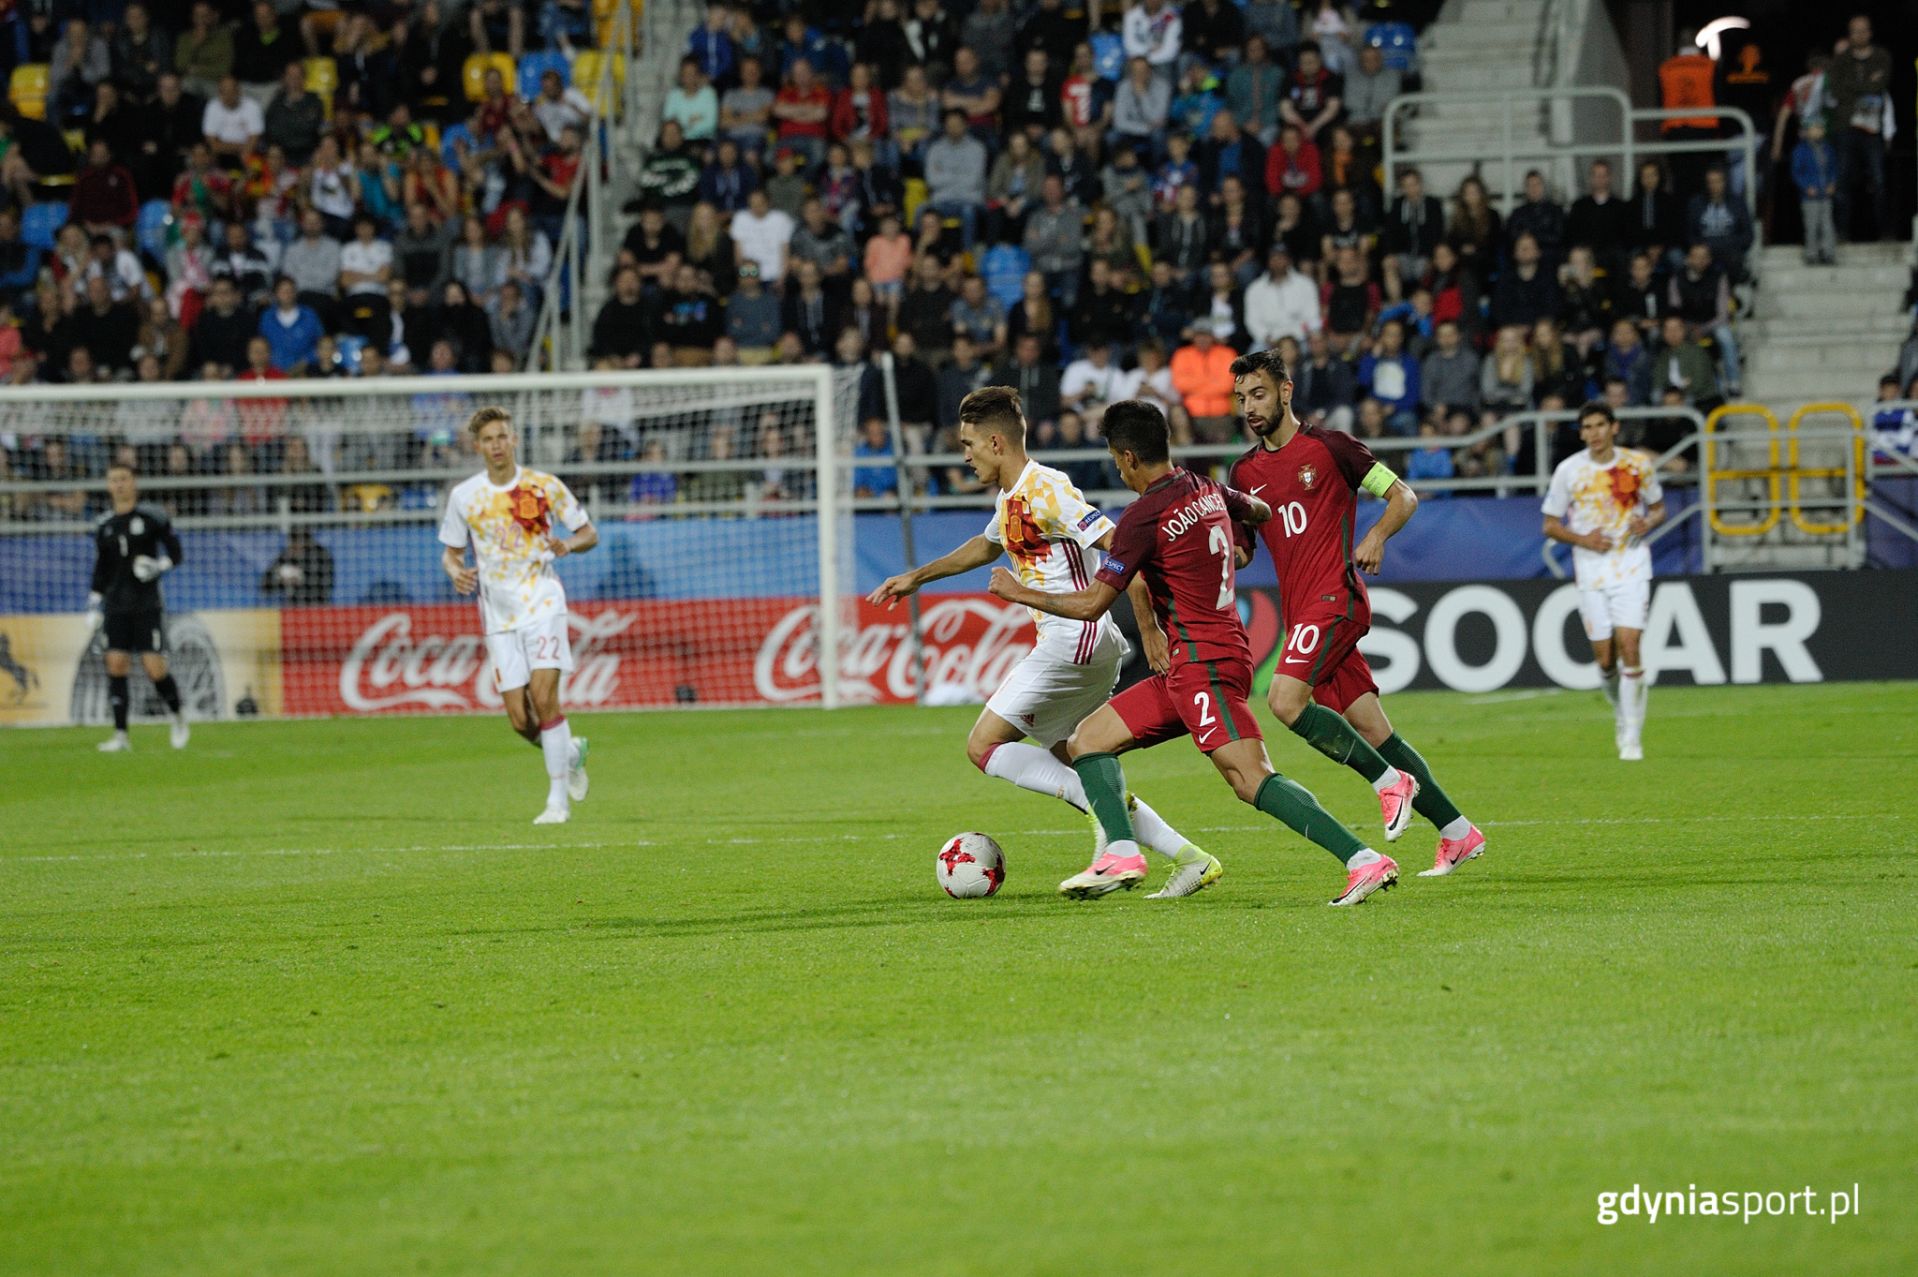 Sytuacja w trakcie meczu - dwóch piłkarzy Portugalii próbuje odebrać piłkę Hiszpanowi.